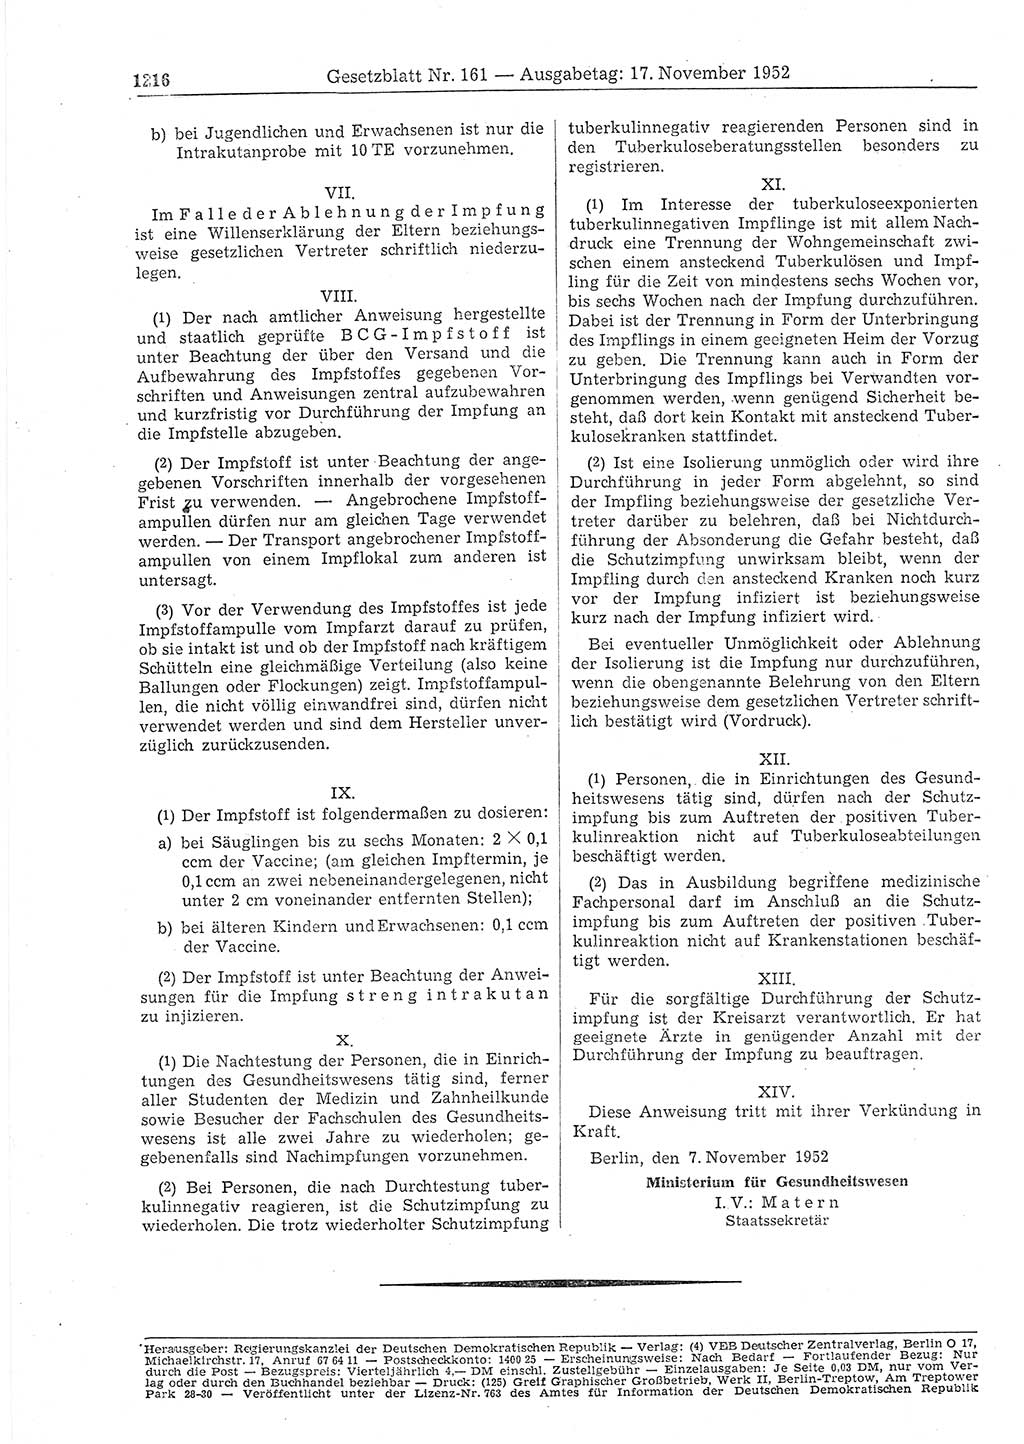 Gesetzblatt (GBl.) der Deutschen Demokratischen Republik (DDR) 1952, Seite 1216 (GBl. DDR 1952, S. 1216)